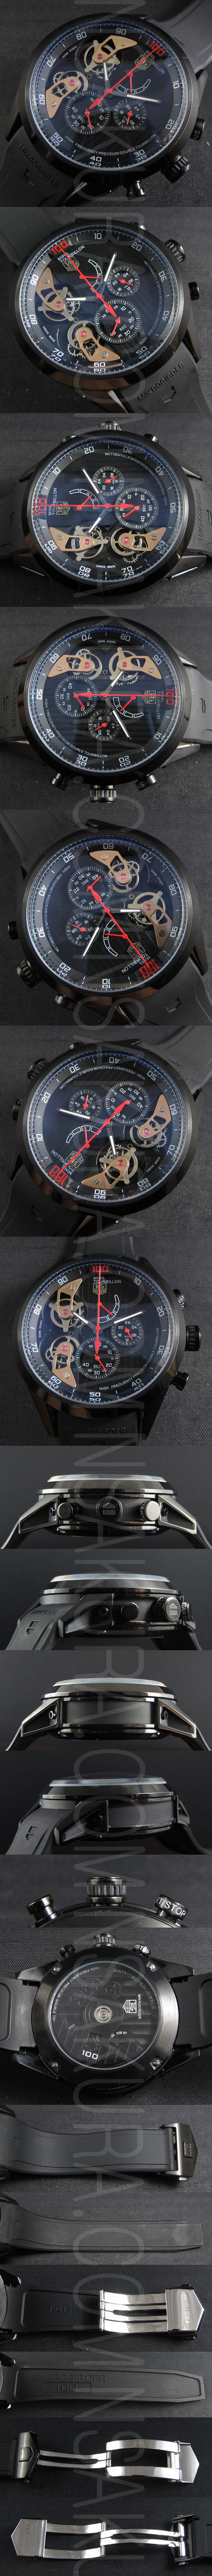 【おすすめ商品】タグホイヤー マイクロタイマー フライング 100スーパーコピー時計